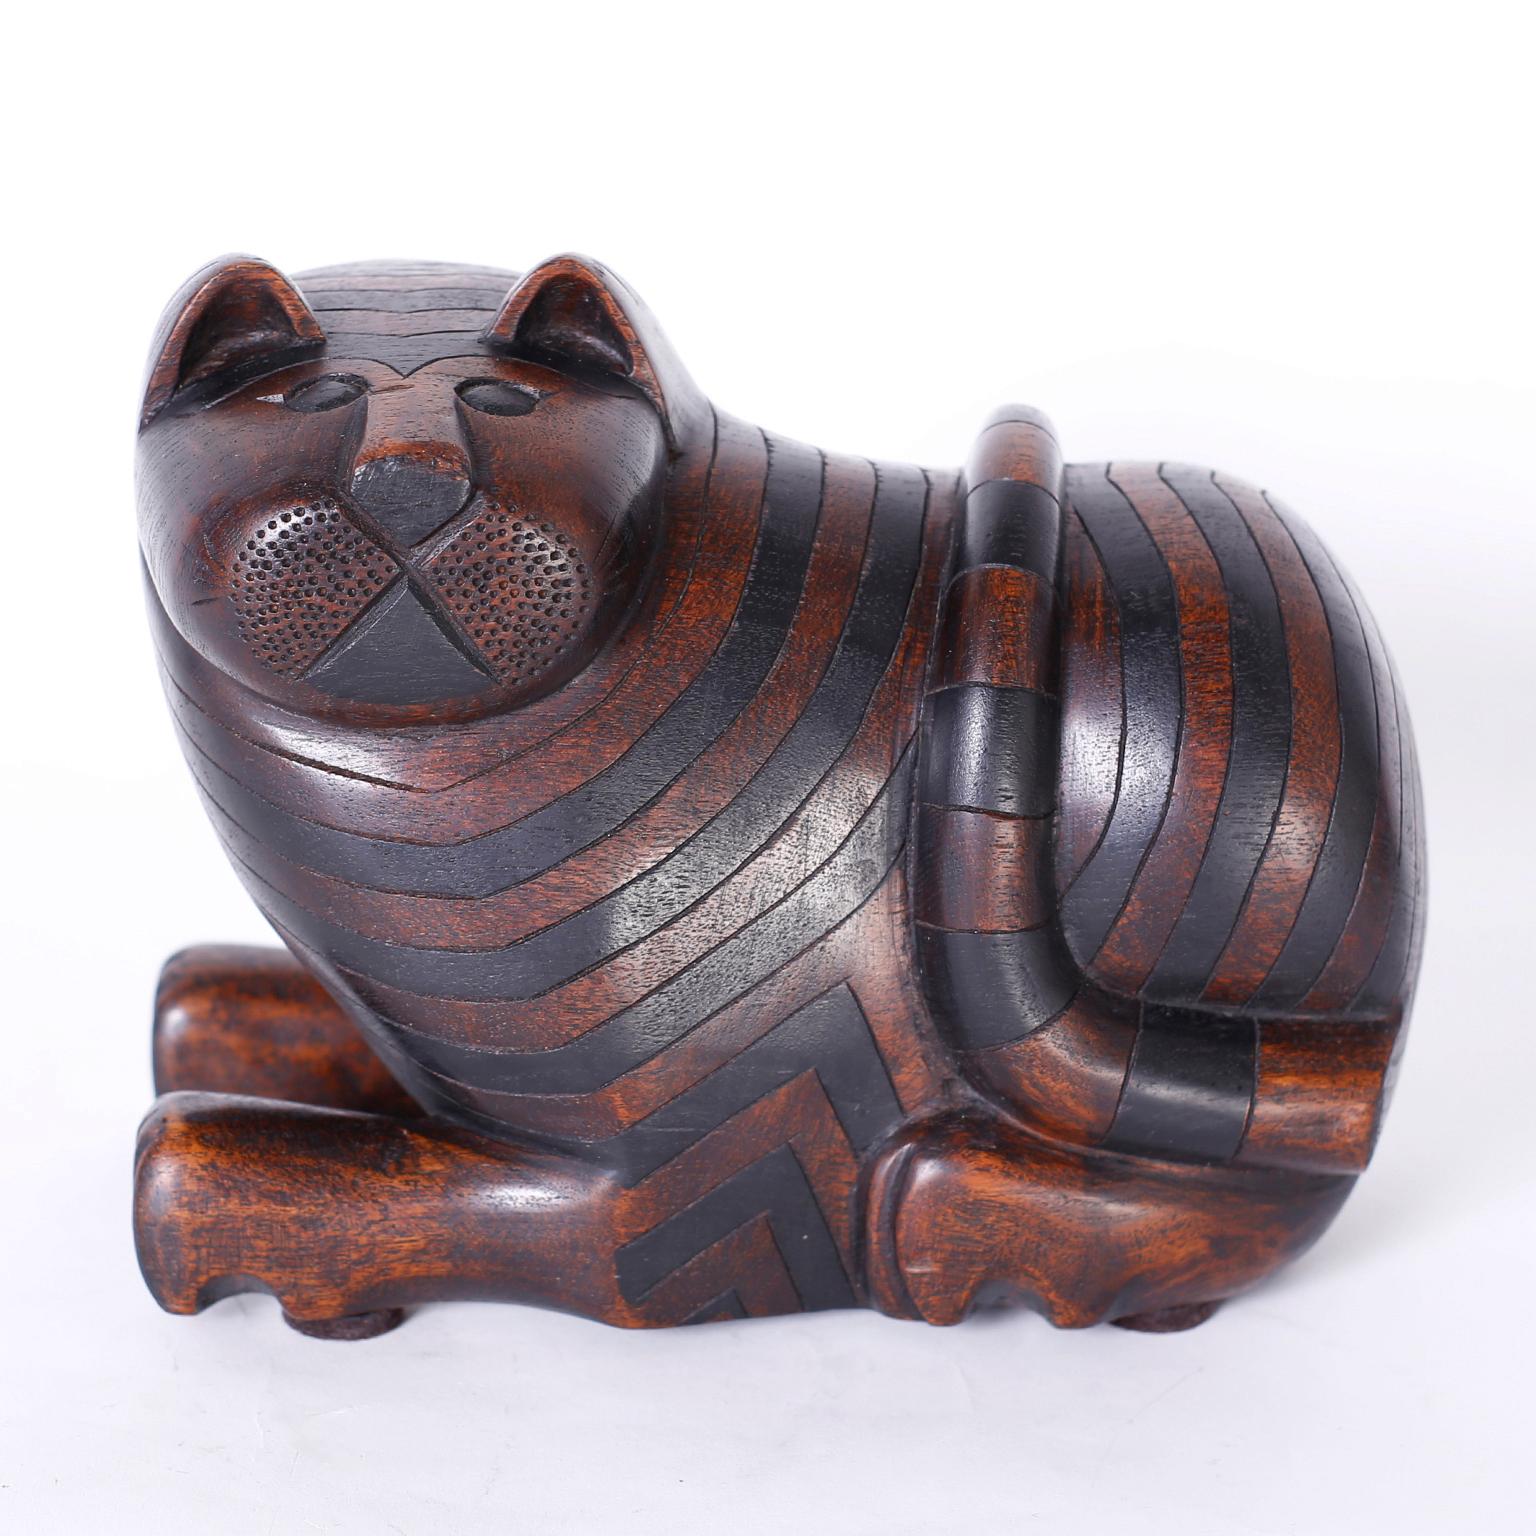 Anglo-indische geschnitzte Mahagoni-Katze mit ebonisierten Streifen und neugierigem Gesichtsausdruck, mit einem Geheimfach am Boden.